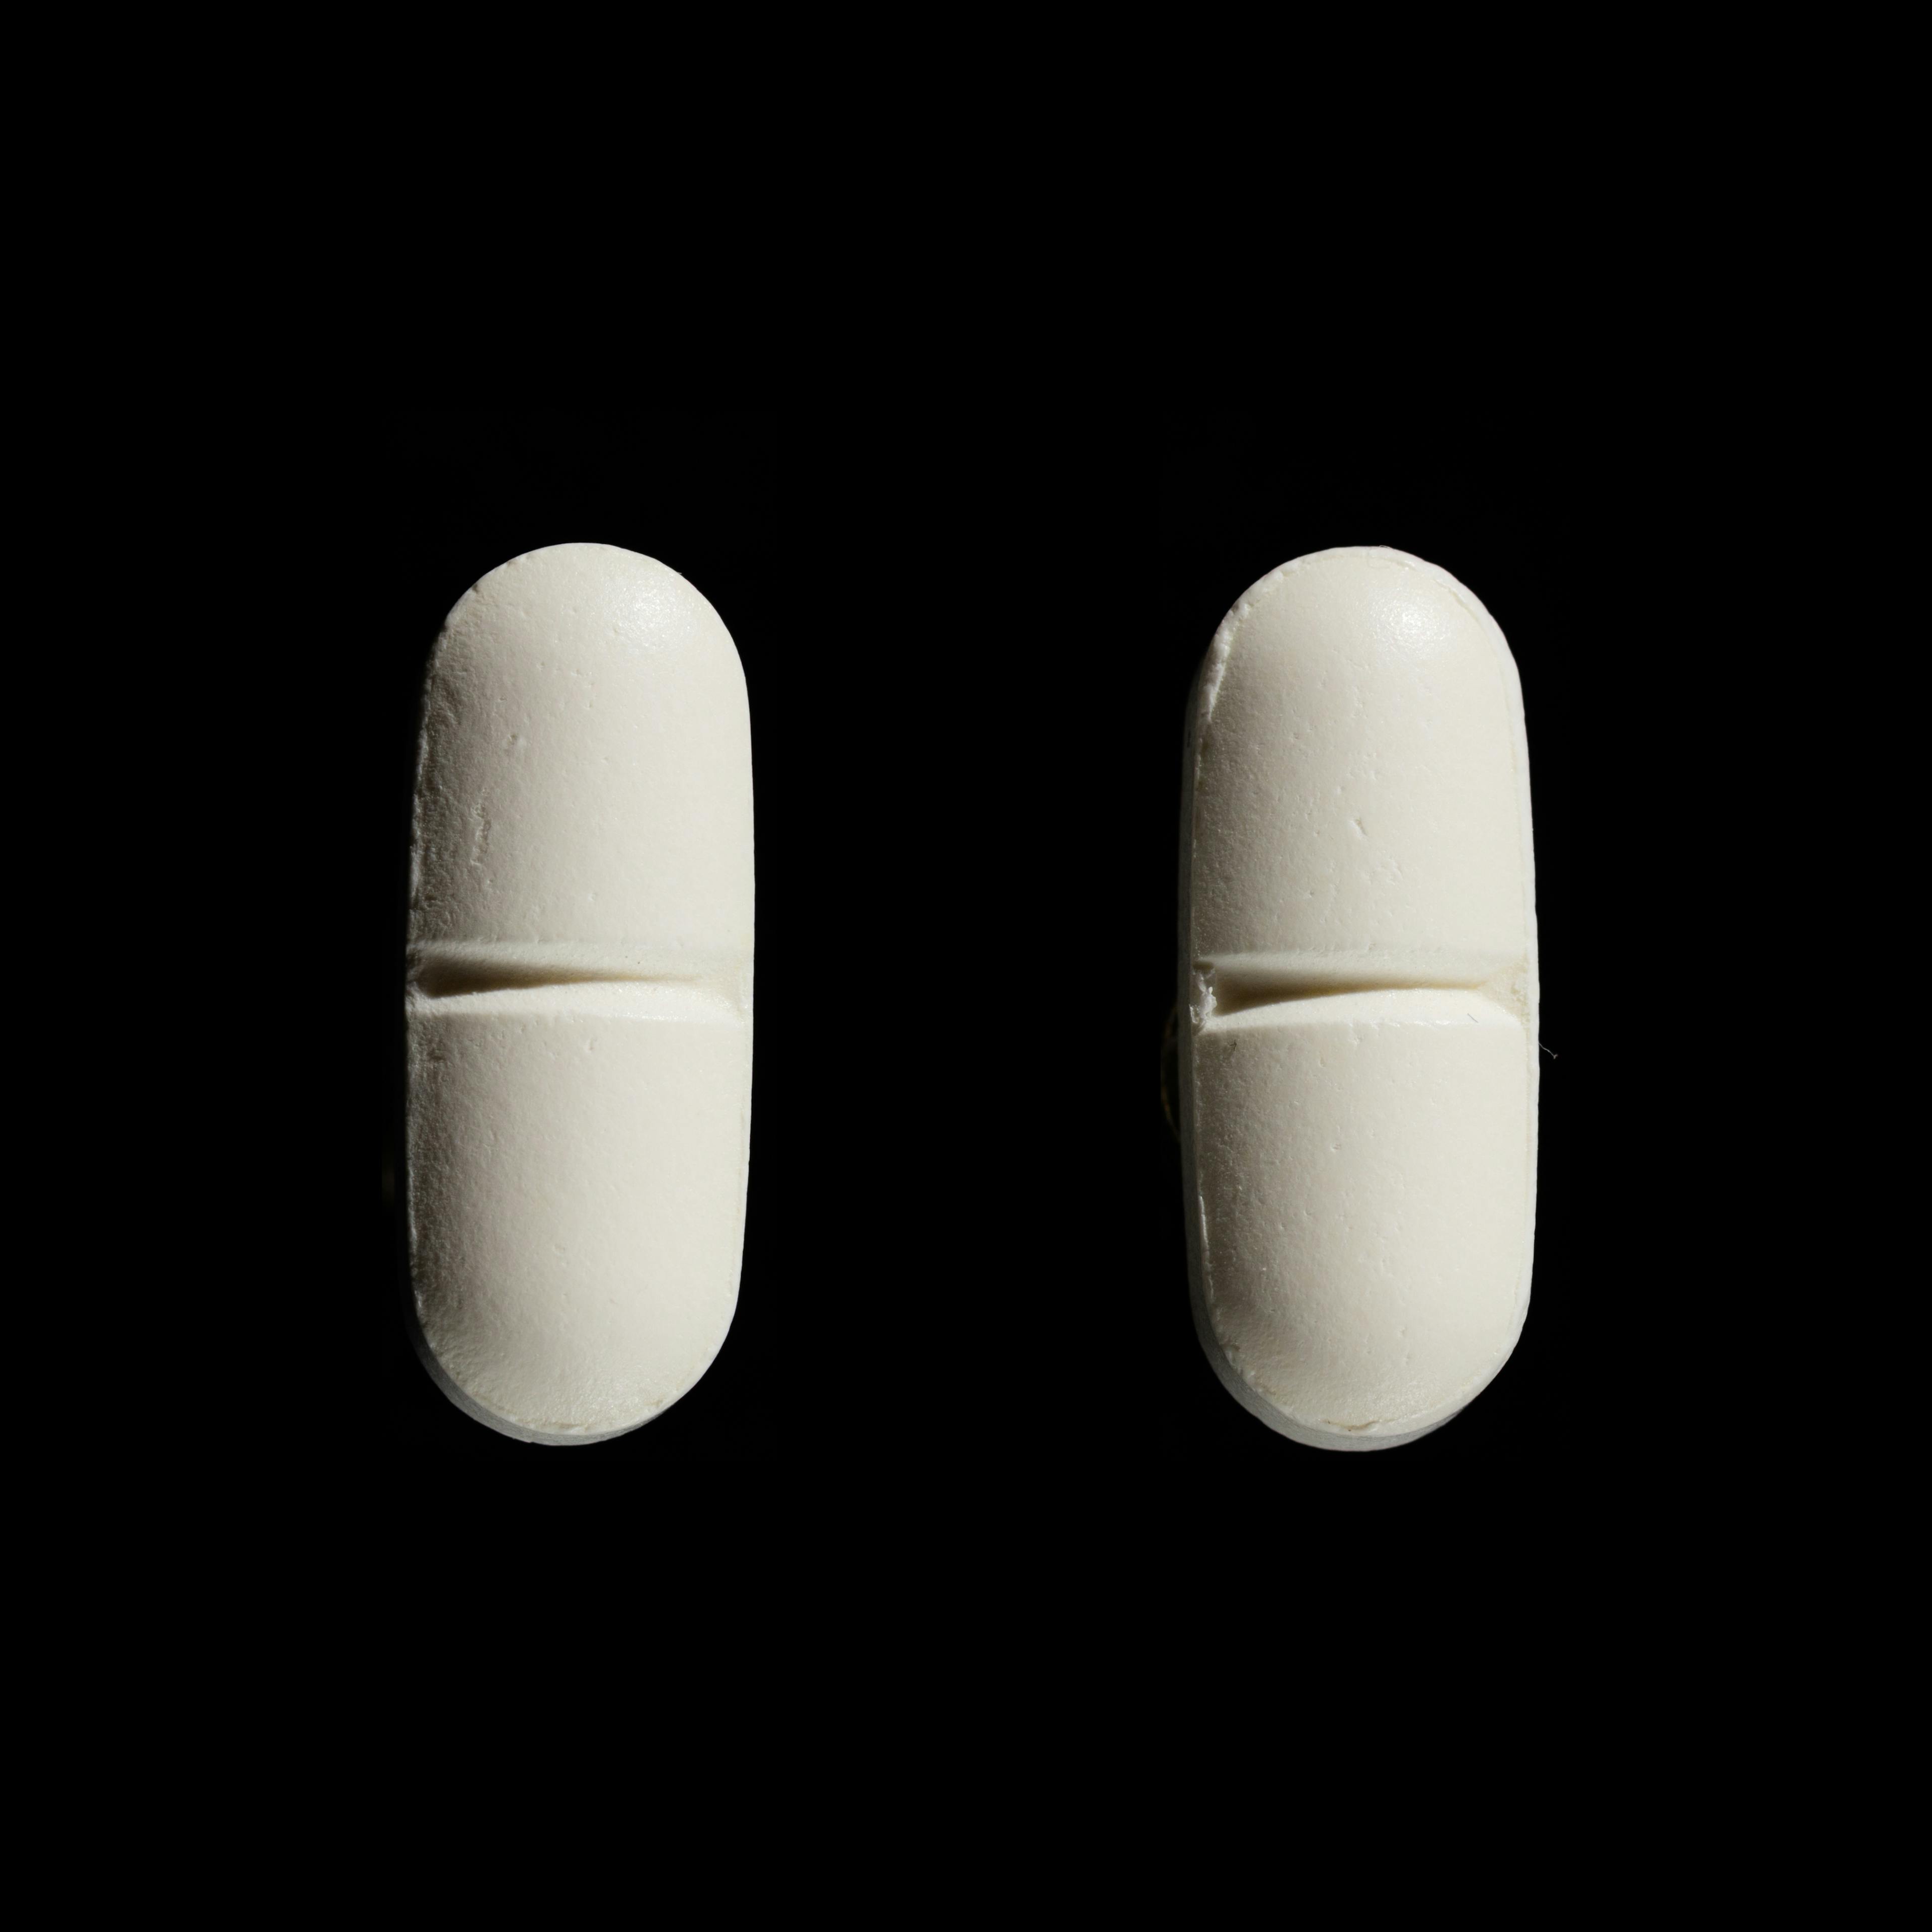 Amoxin 500 mg